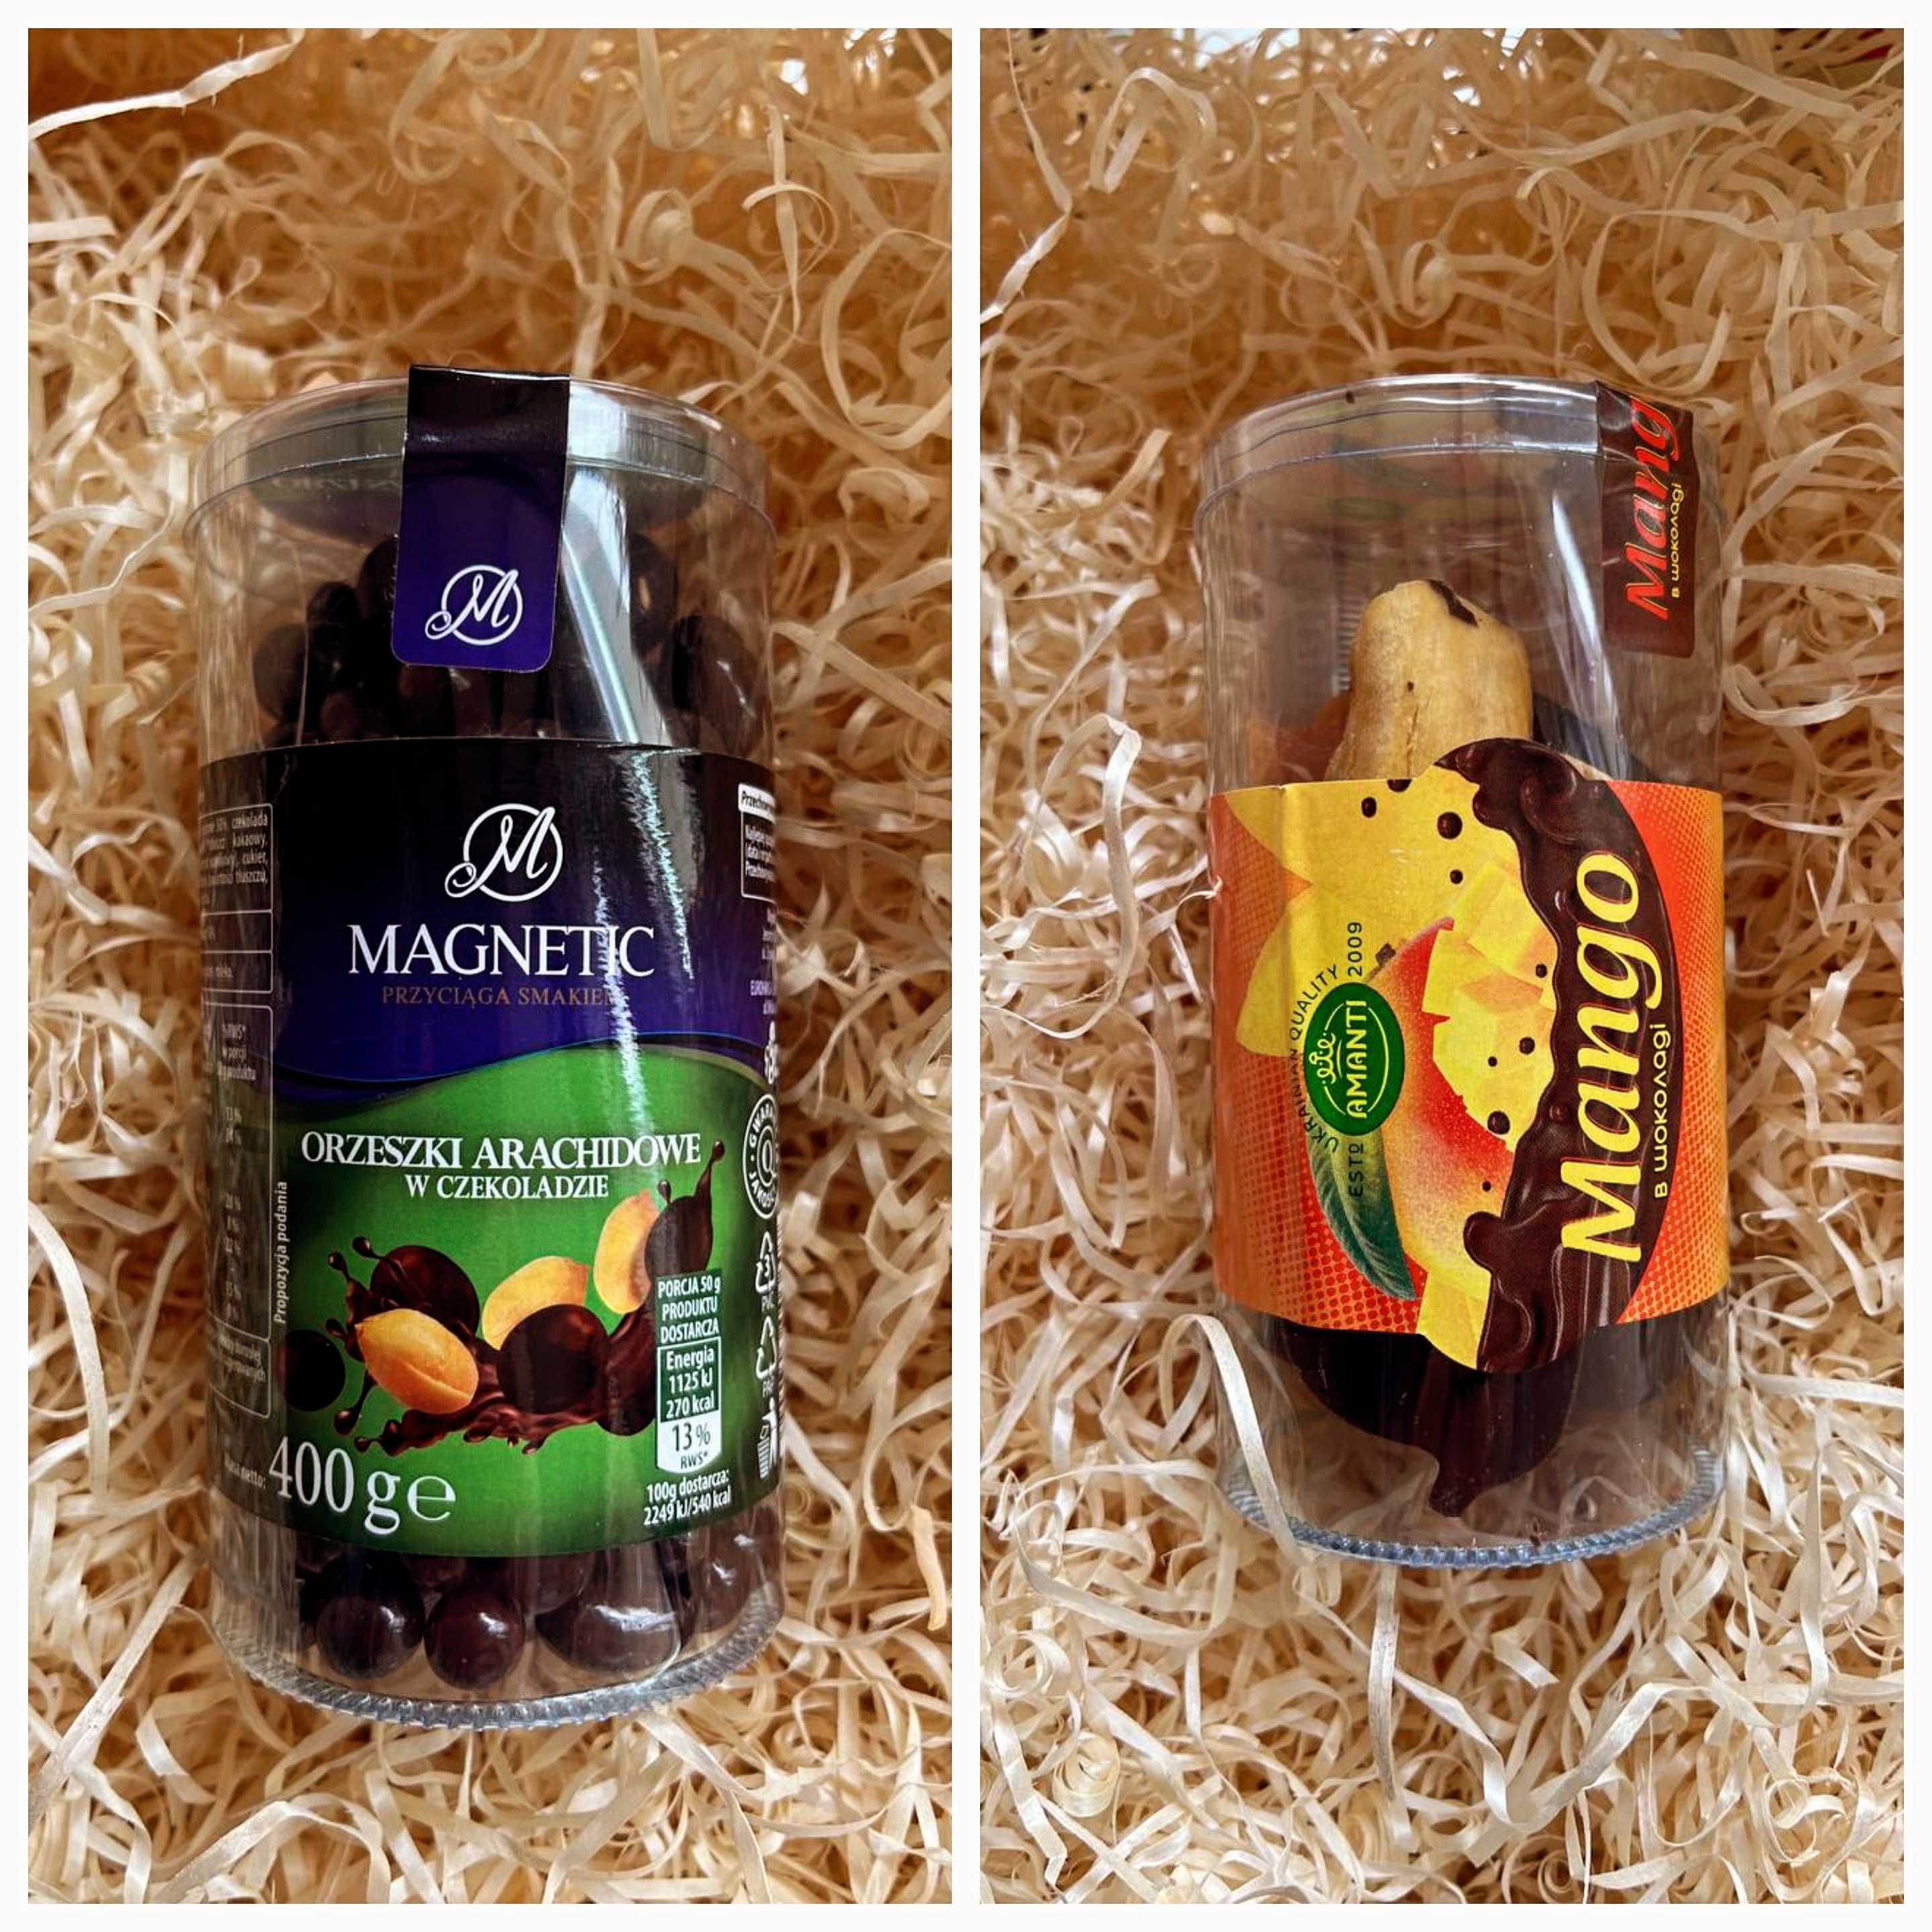 Арахис драже в шоколаде Манго в тубе